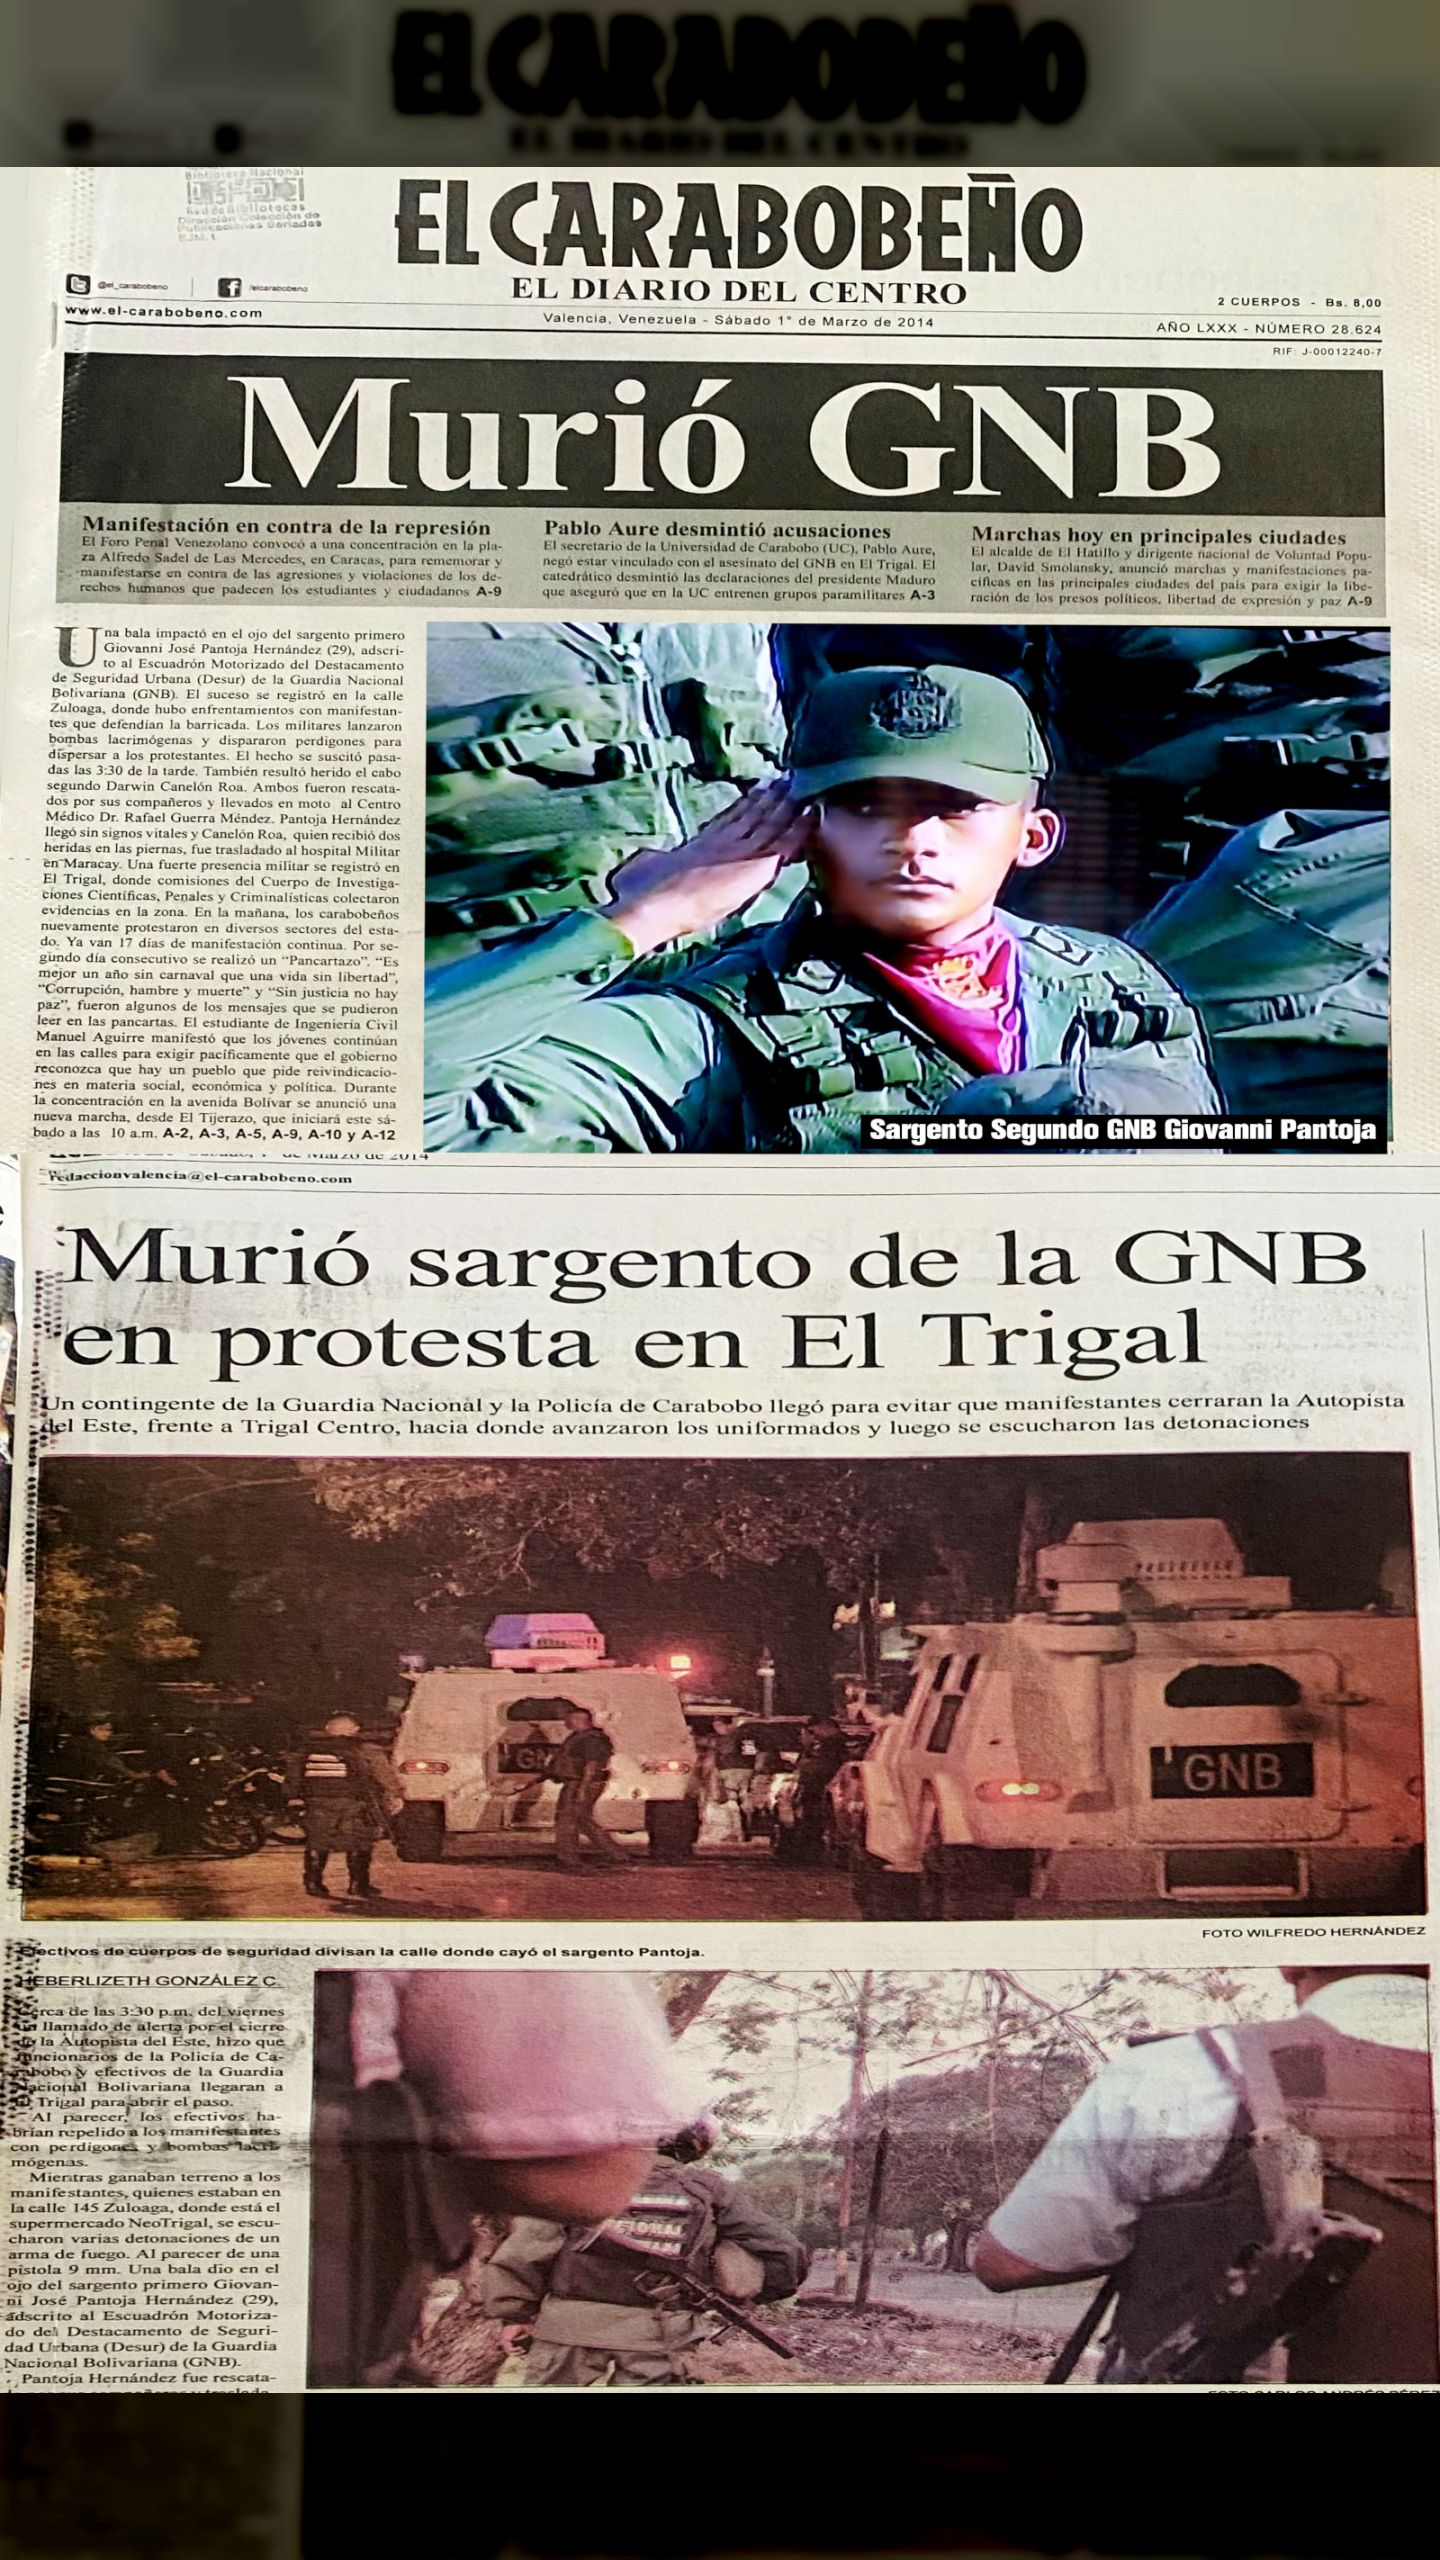 GUARIMBAS 2014: ES ASESINADO EL SARGENTO SEGUNDO GNB GIOVANNI PANTOJA HERNÁNDEZ (ELCARABOBEÑO, 1º DE MARZO DE 2014)